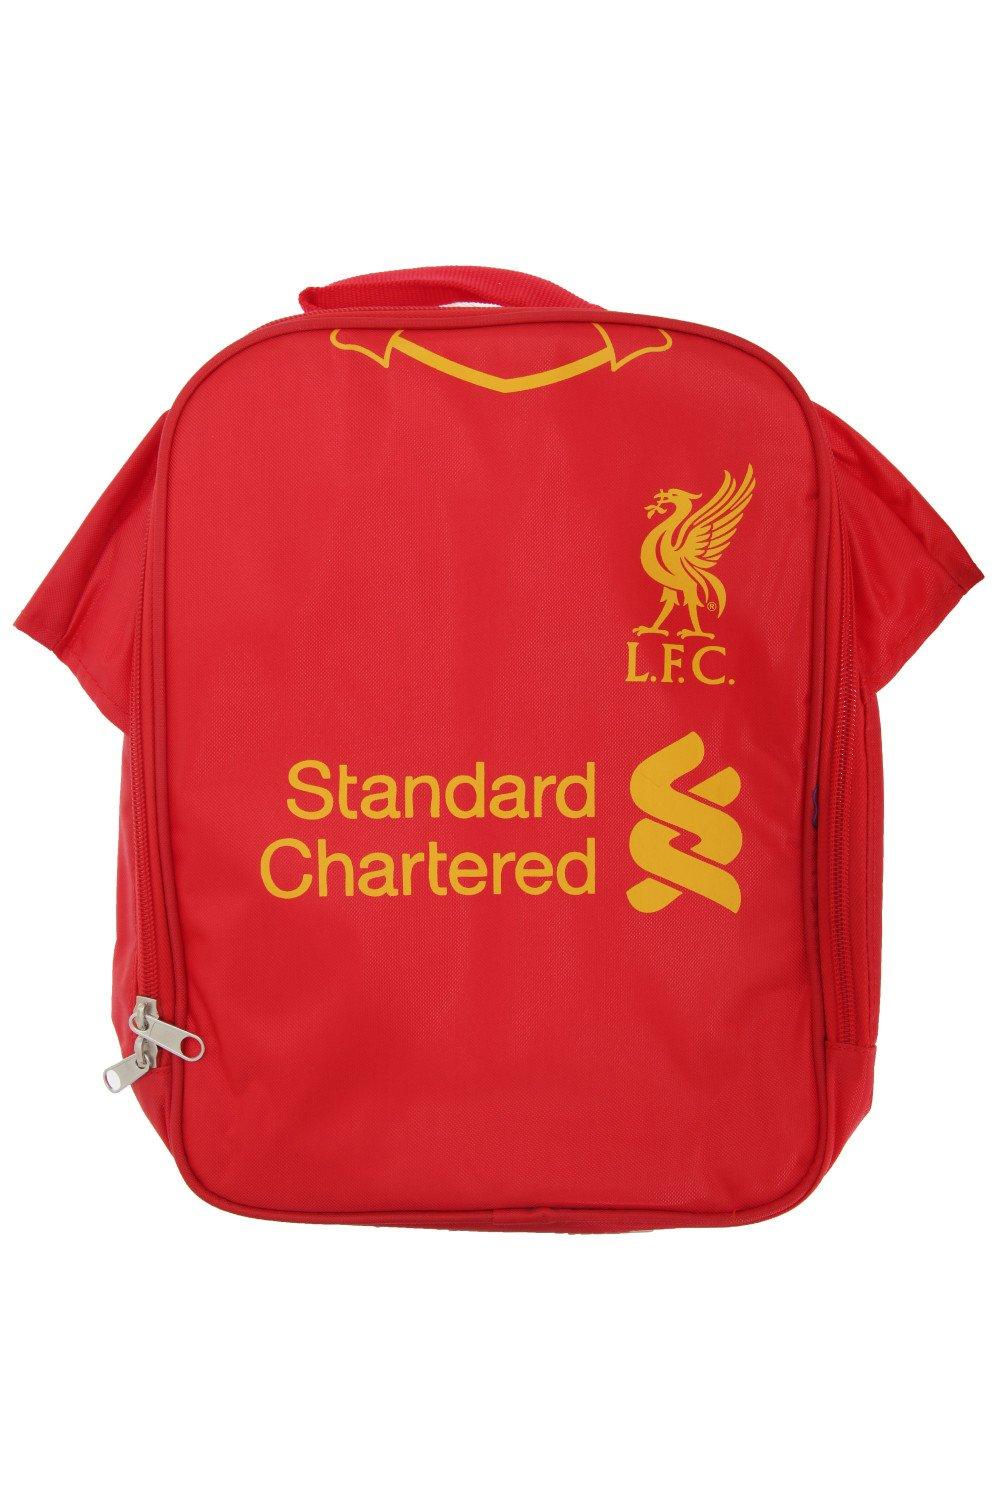 Официальная изолированная сумка для обеда/холодильник для футбольной рубашки Liverpool FC, красный